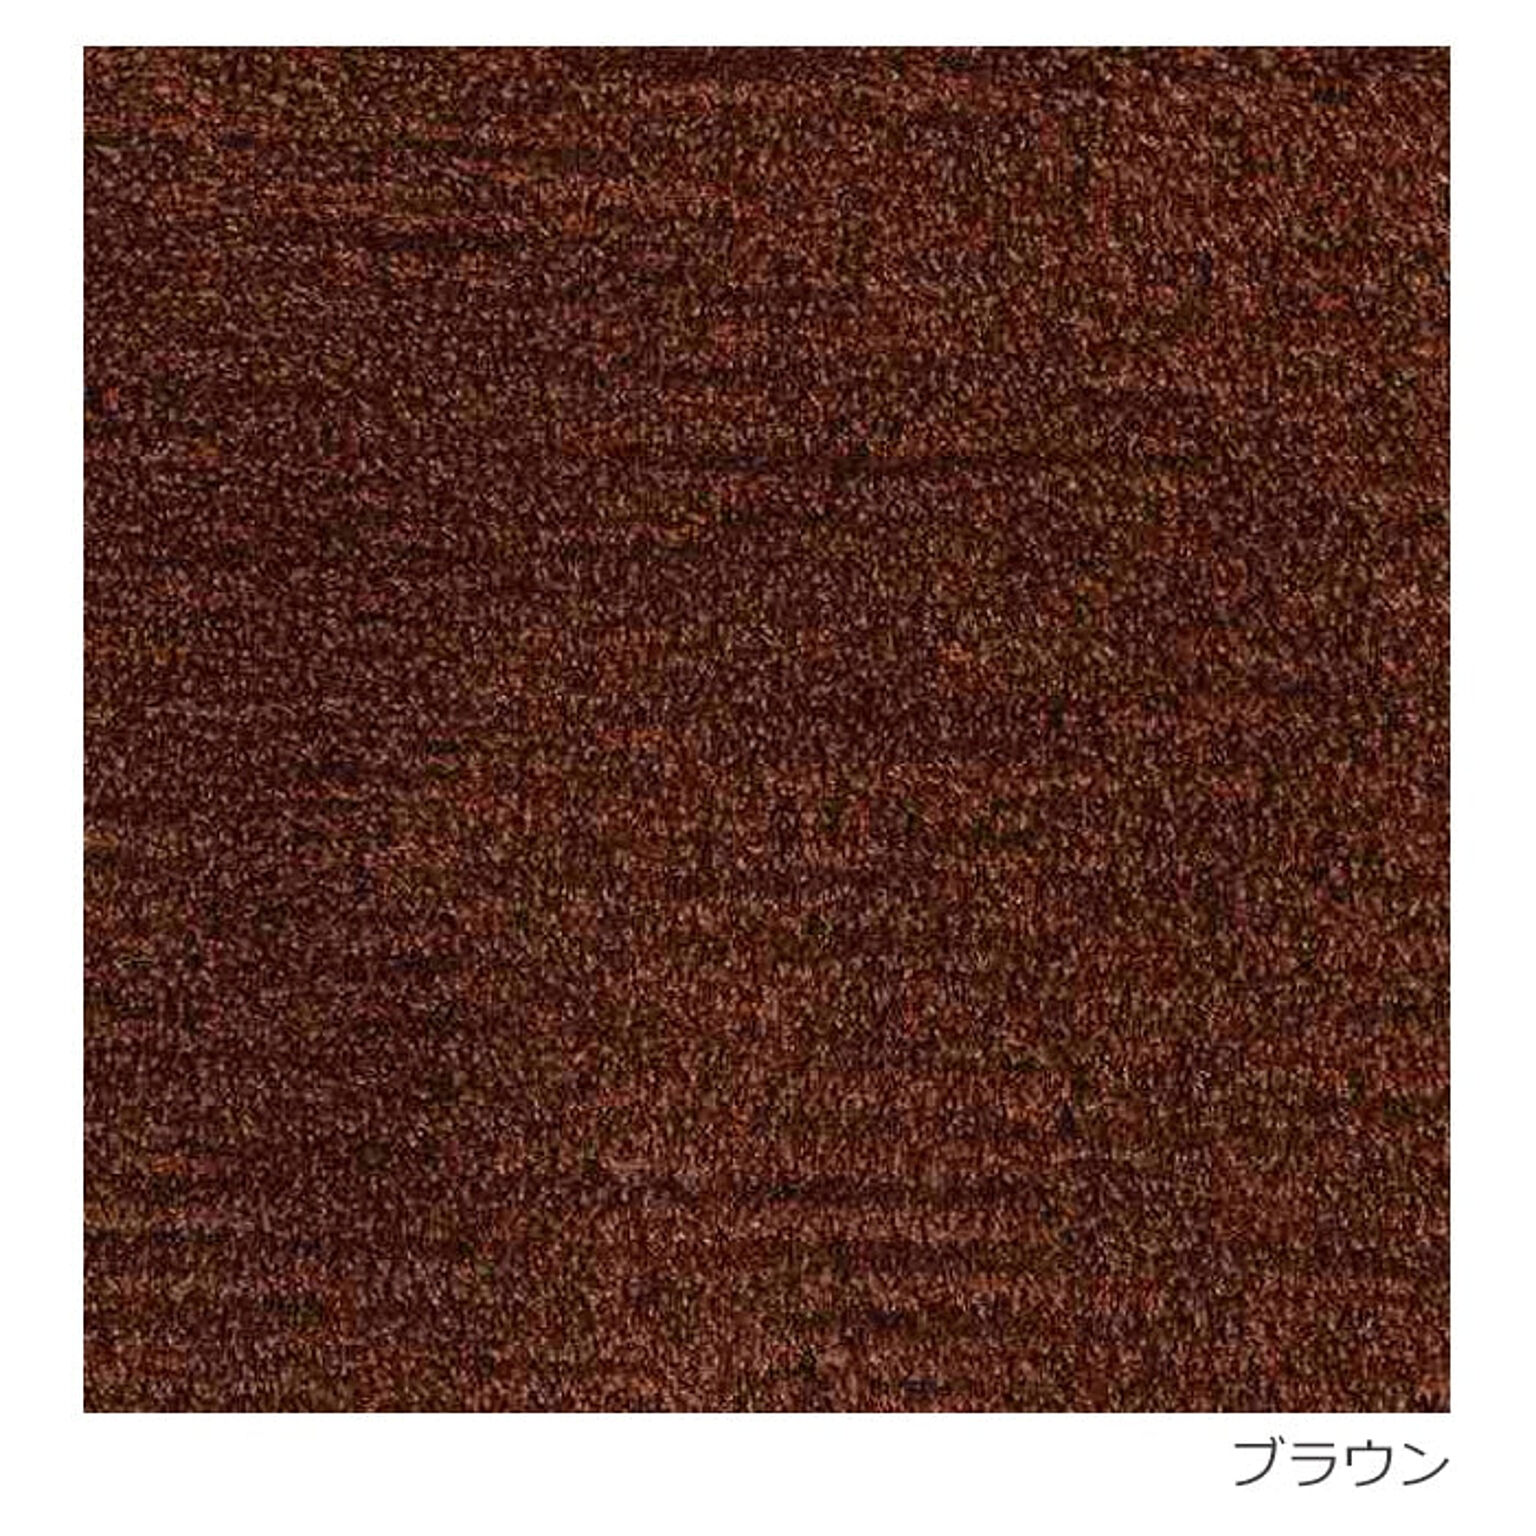 ラグ ラグマット 日本製 絨毯 Prevell プレーベル ロブ 約200×250cm アクリル シンプル アイボリー ブラウン レッド グリーン 引っ越し 新生活